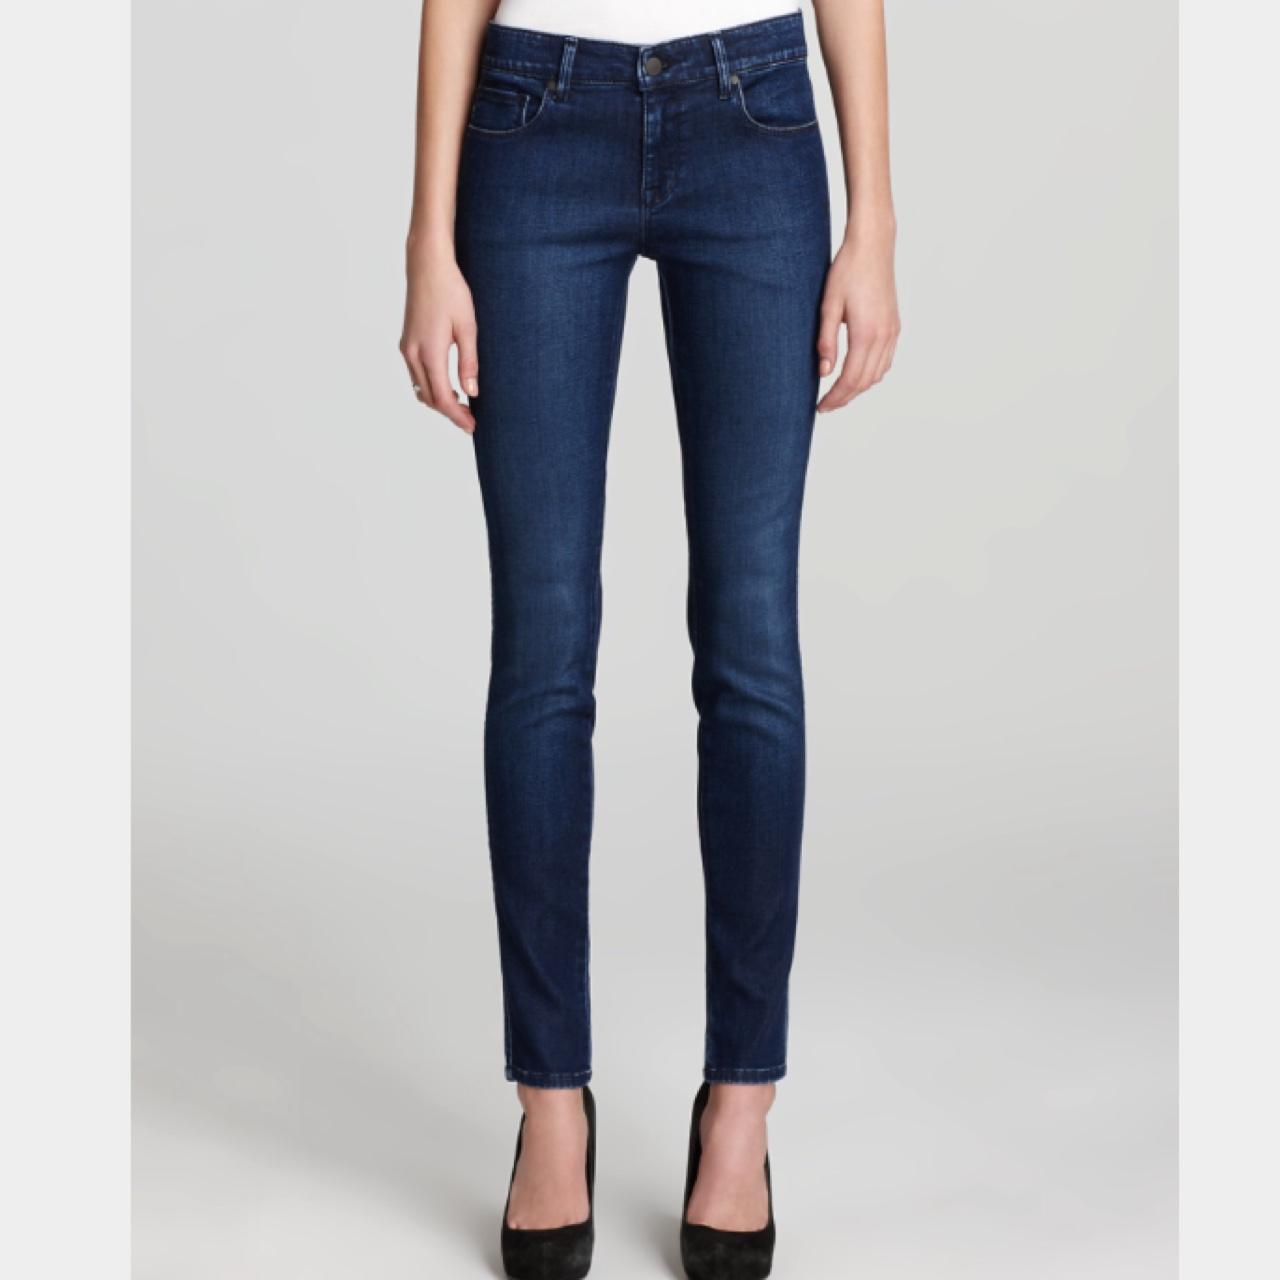 Genetic denim shya skinny jeans- waist 26 bought a... - Depop